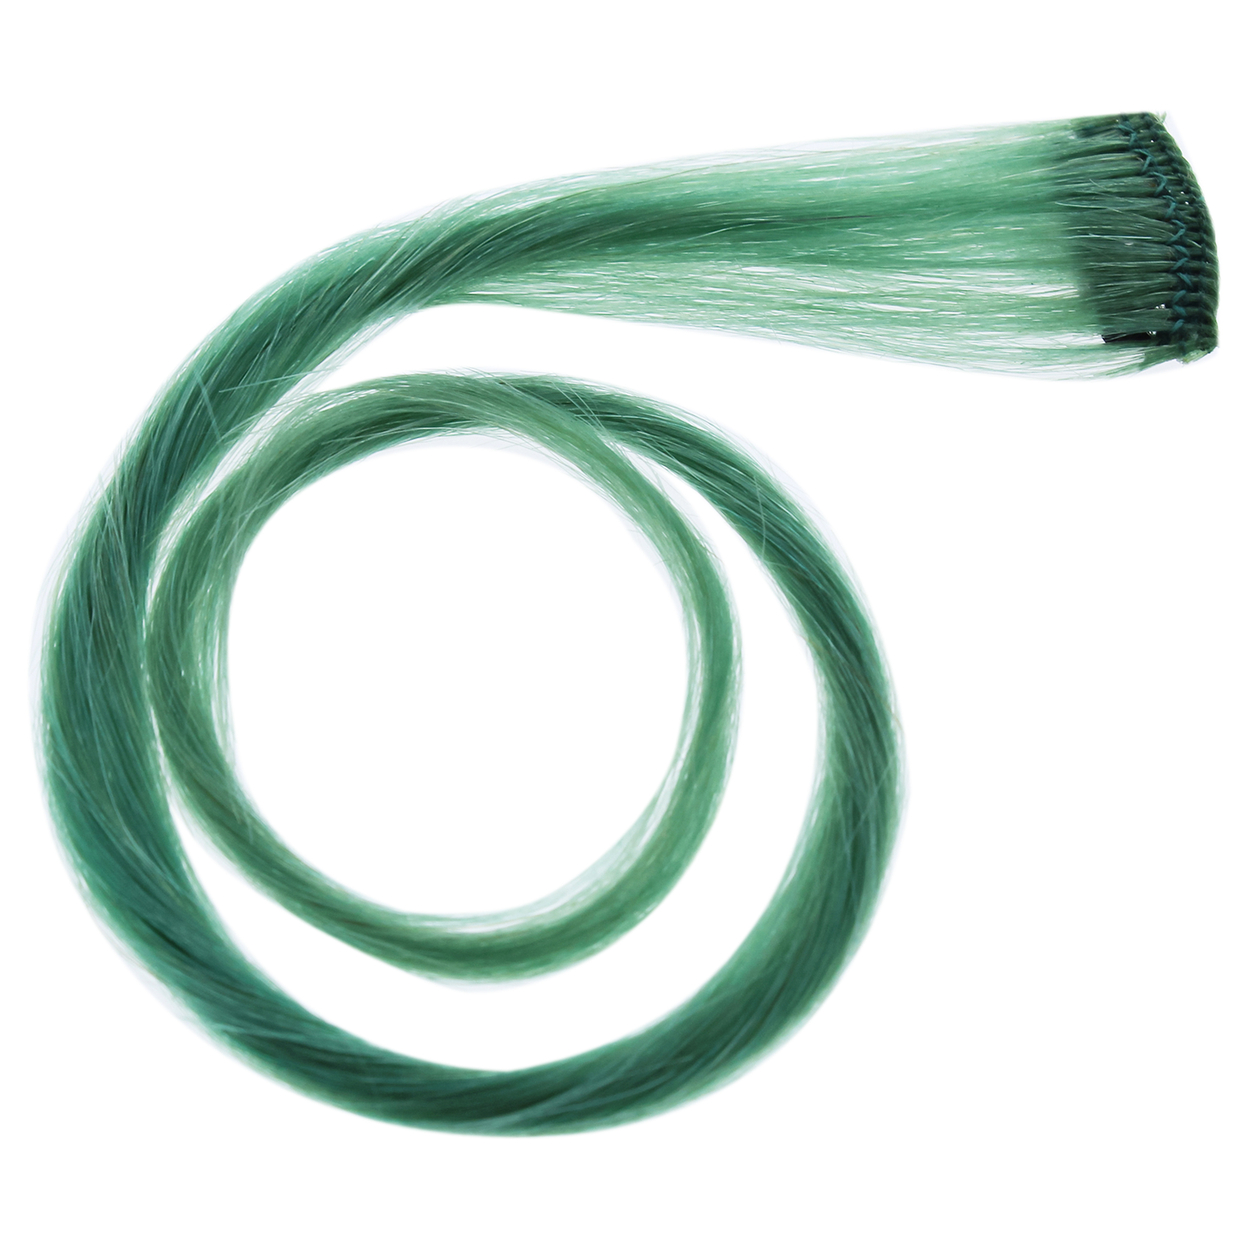 Hairdo Human Hair Color Strip - Teal 16 Inch